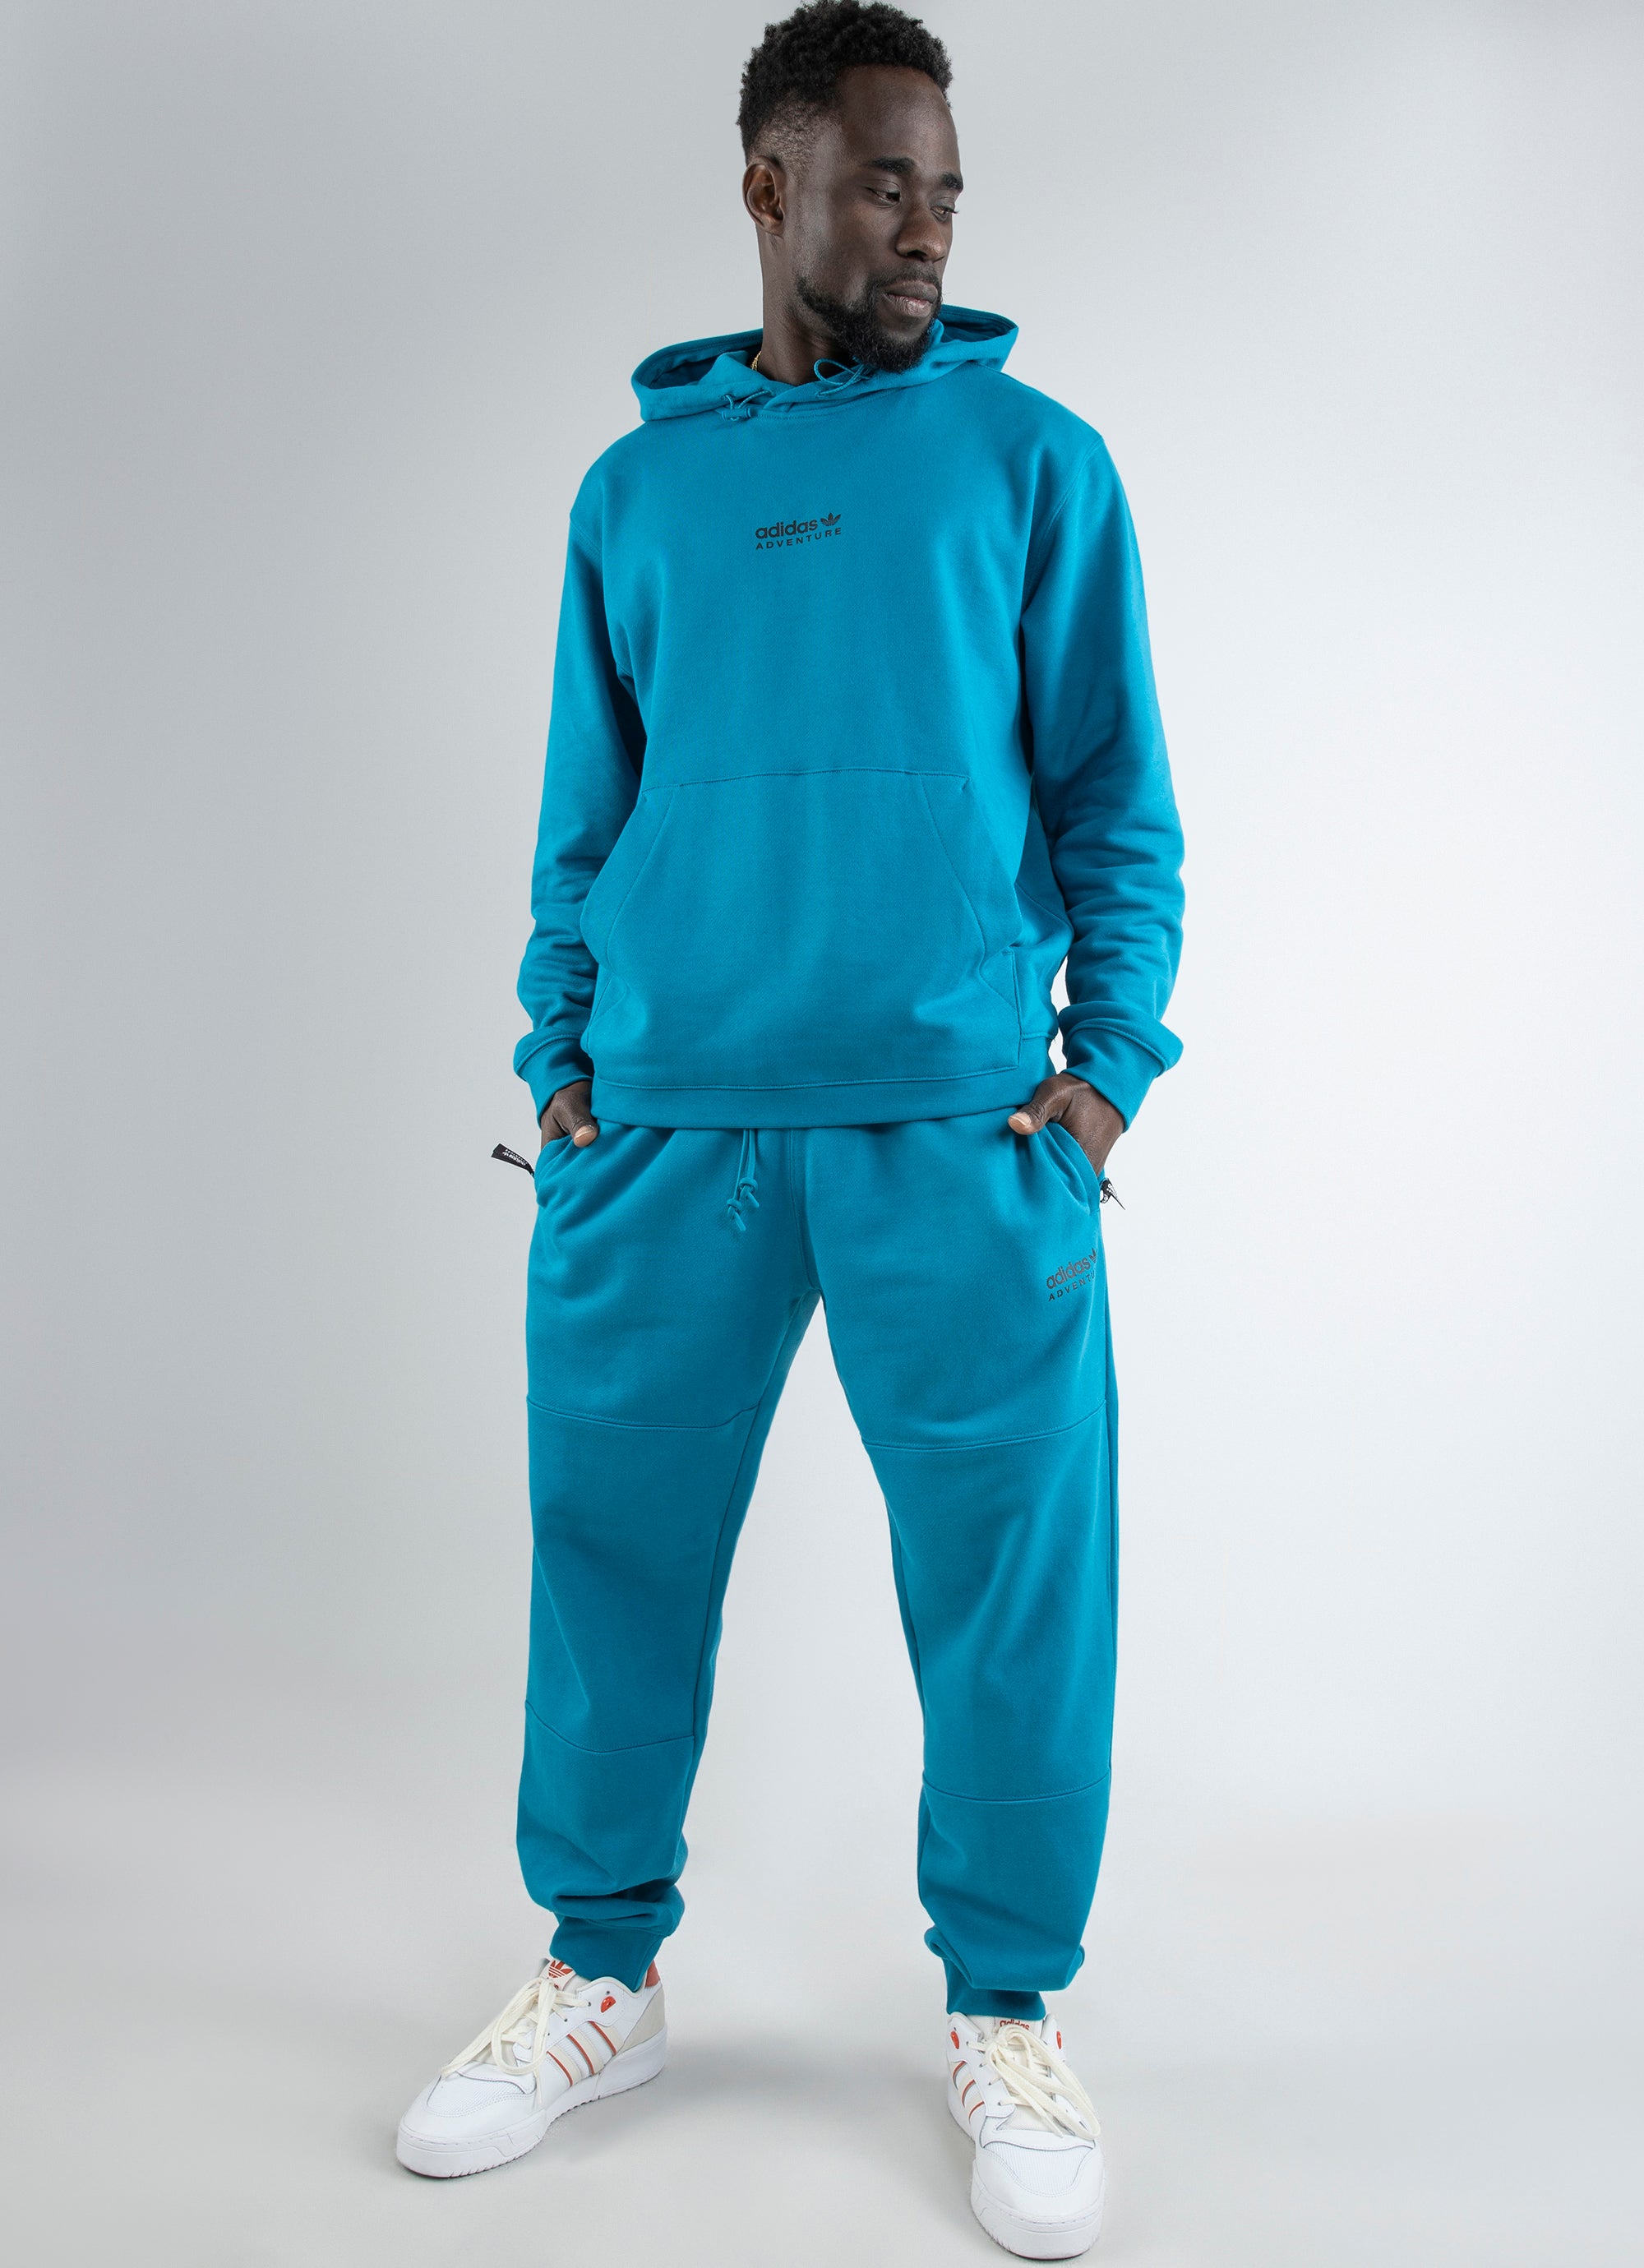 Adidas Originals Adventure Sweatpants in Blue